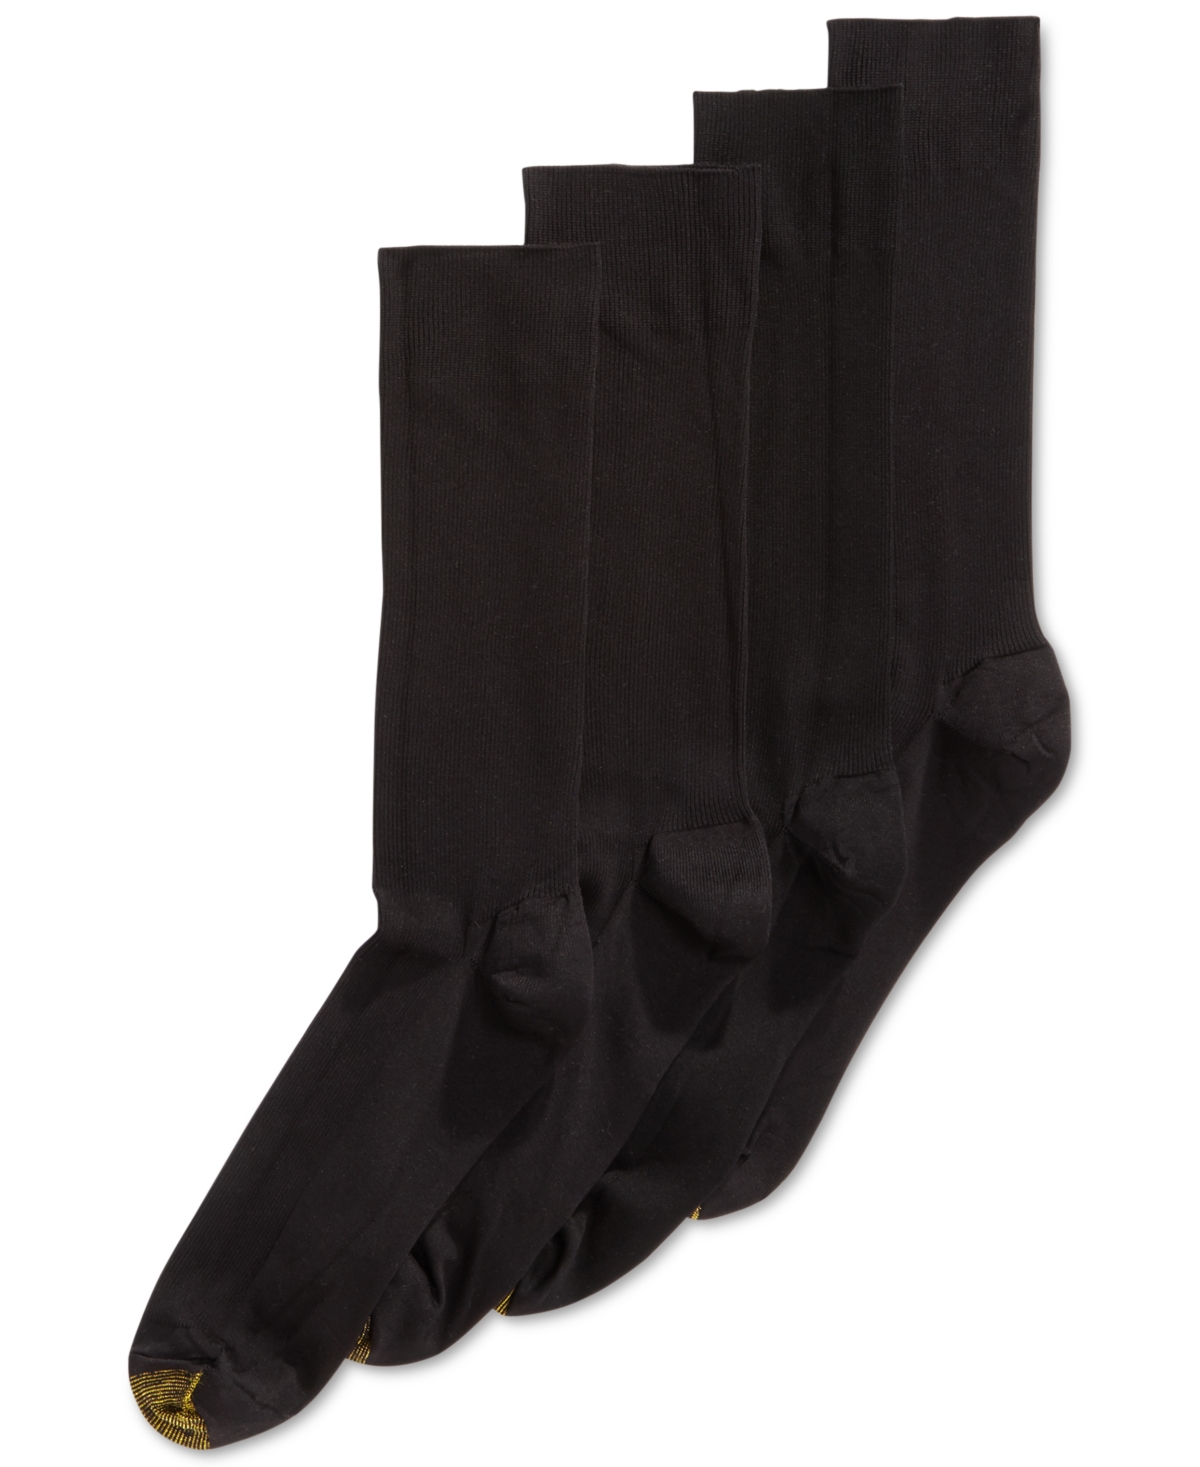 Men's Bonus 4-Pack Dress Metropolitan Crew Socks - Black